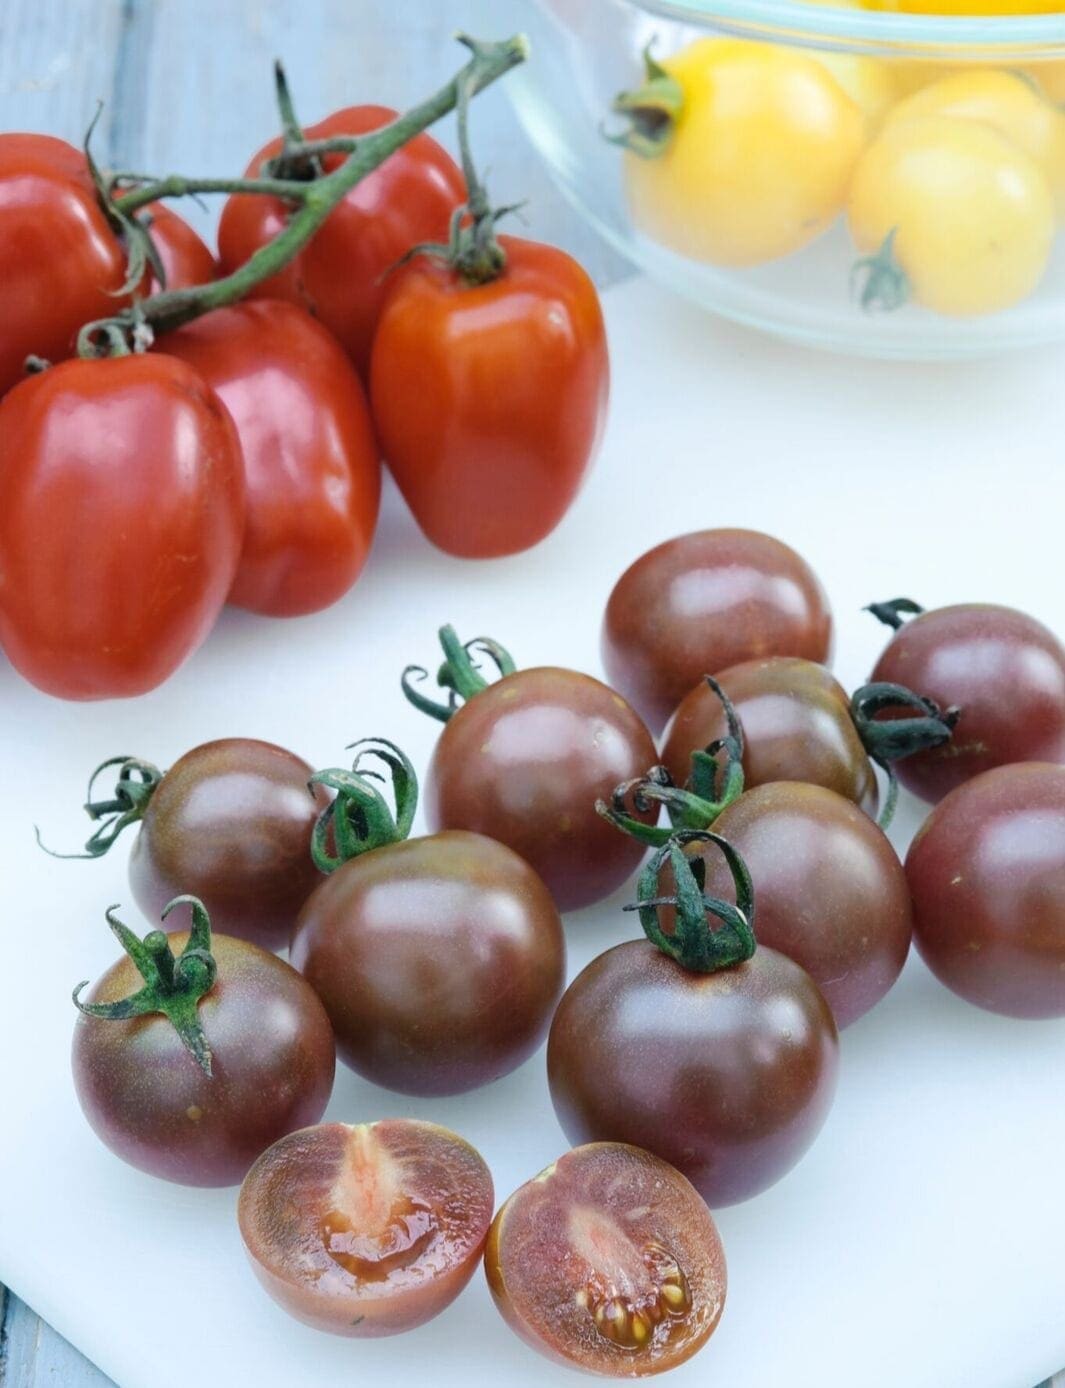 Jeune Plante De Pousse De Tomate Avec Des Feuilles S'élevant Dans Le Pot De  Tourbe Image stock - Image du cultivez, ferme: 120493223